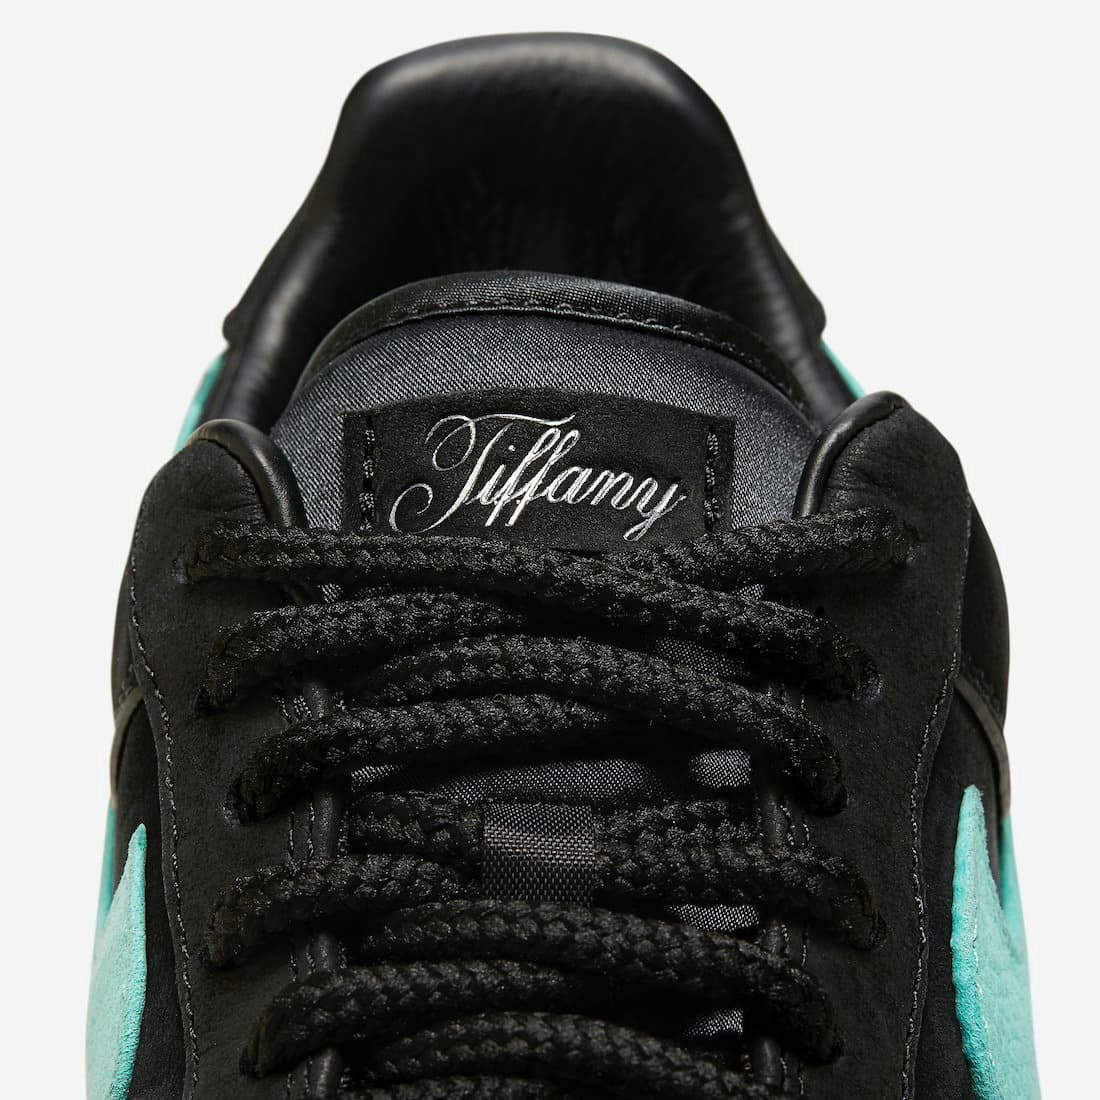 Tiffany & Co. x Nike Air Force 1 